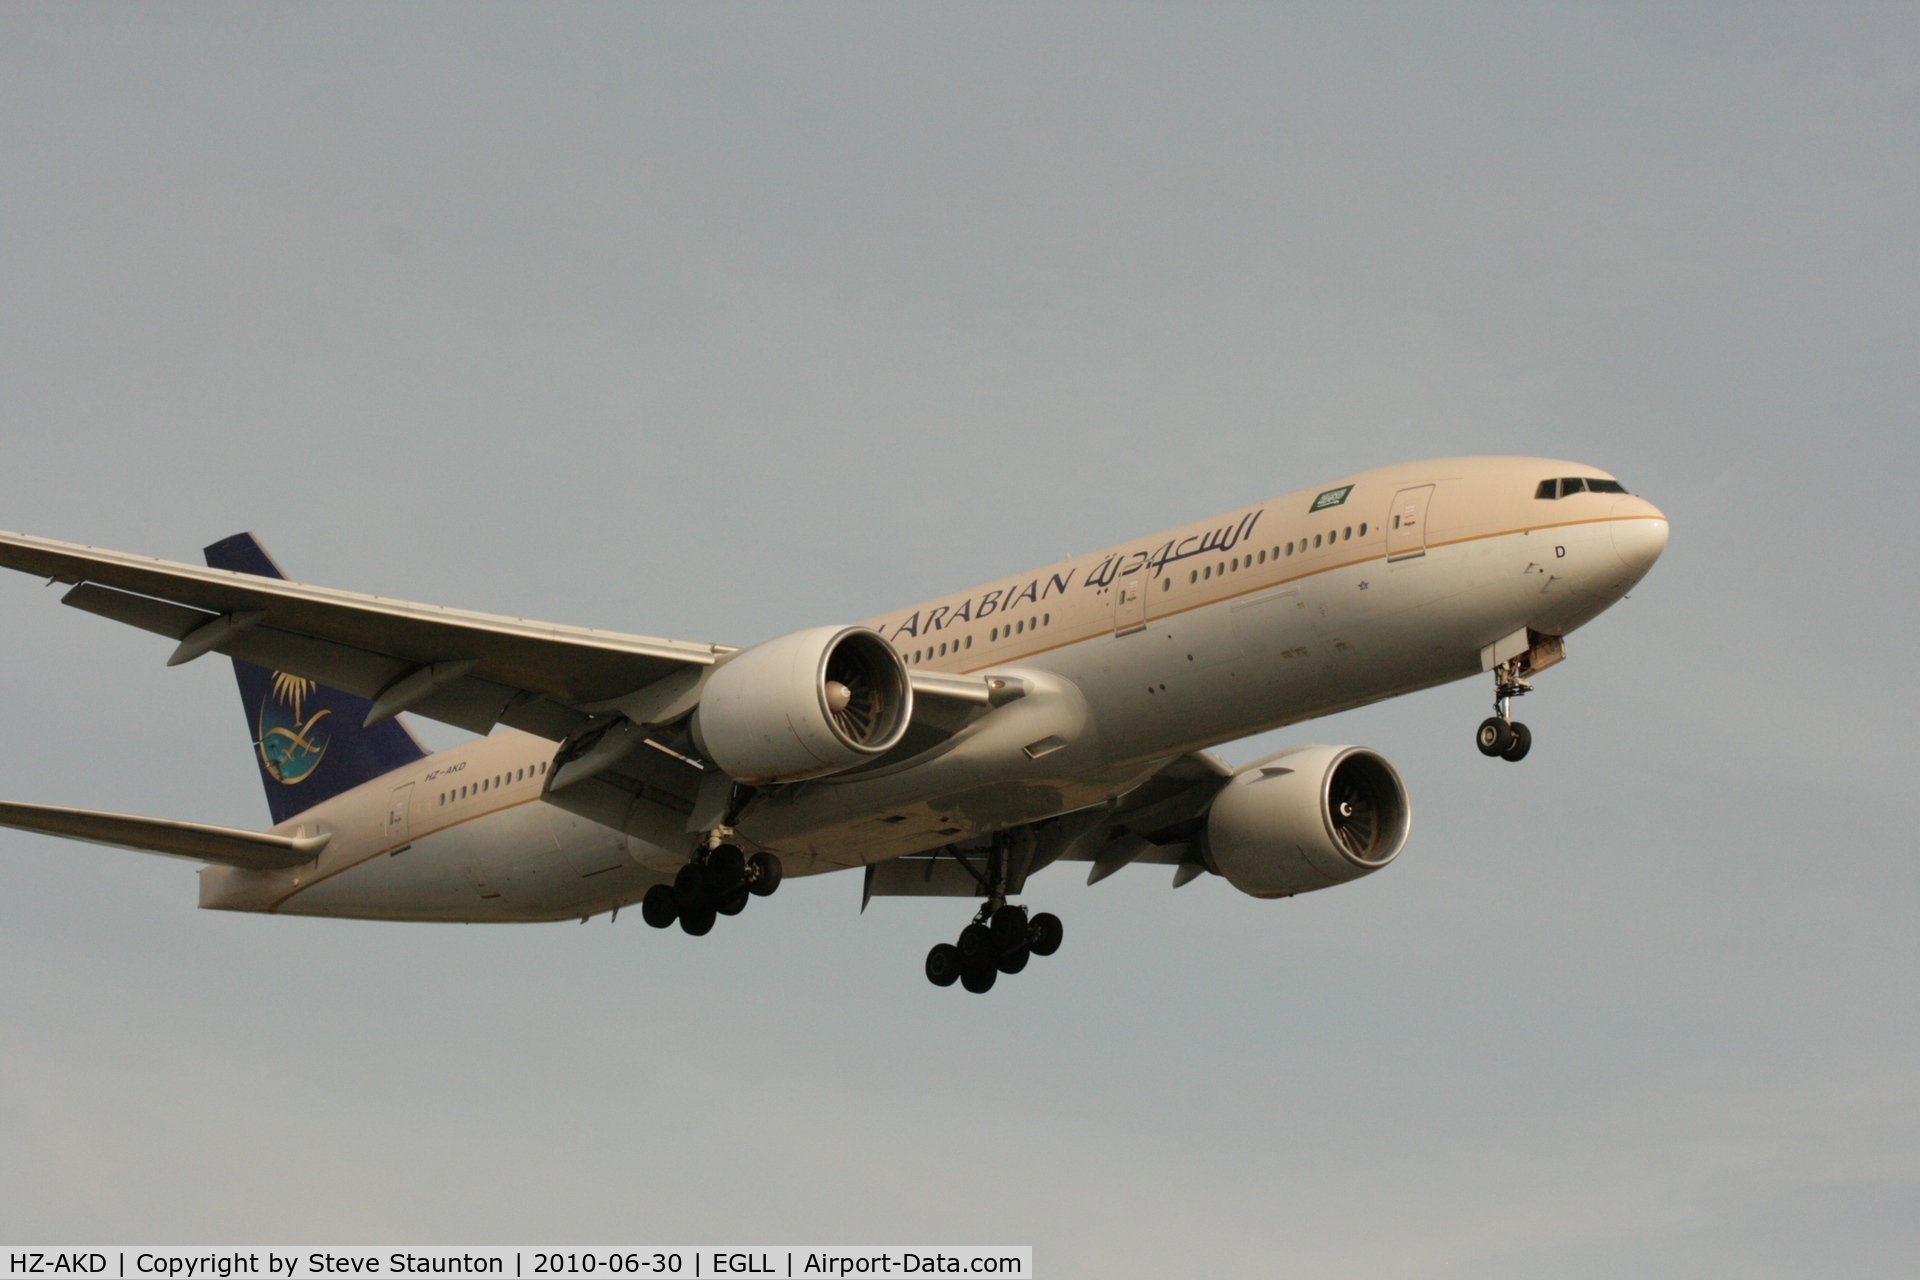 HZ-AKD, 1997 Boeing 777-268/ER C/N 28347, Taken at Heathrow Airport, June 2010